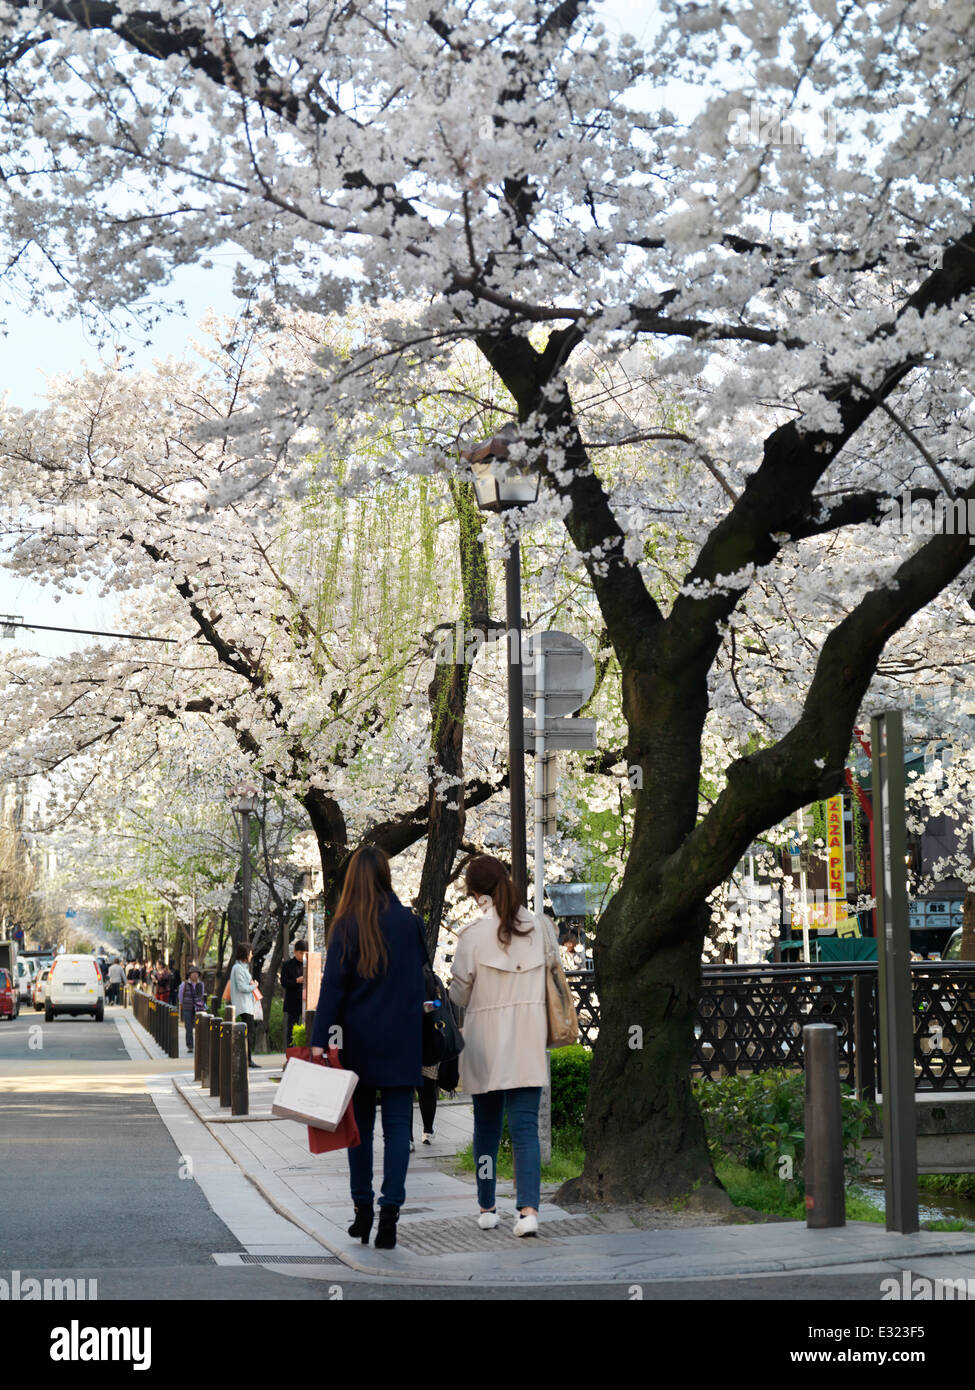 Cherry blossom at Kiyamachi dori street in Kyoto, Japan 2014 Stock Photo